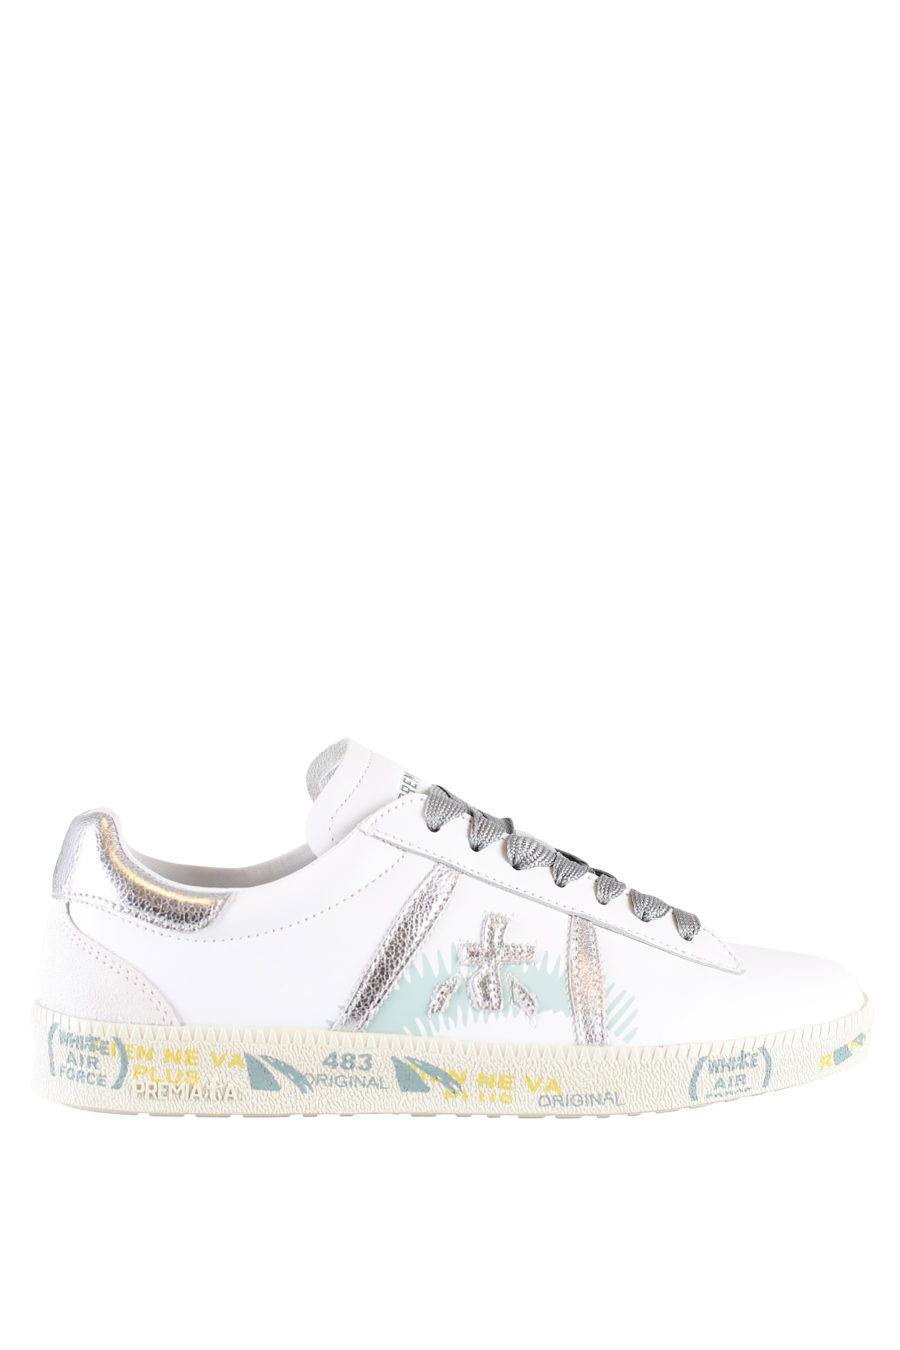 Zapatillas blancas con detalles en plata "Andyd" - IMG 1800